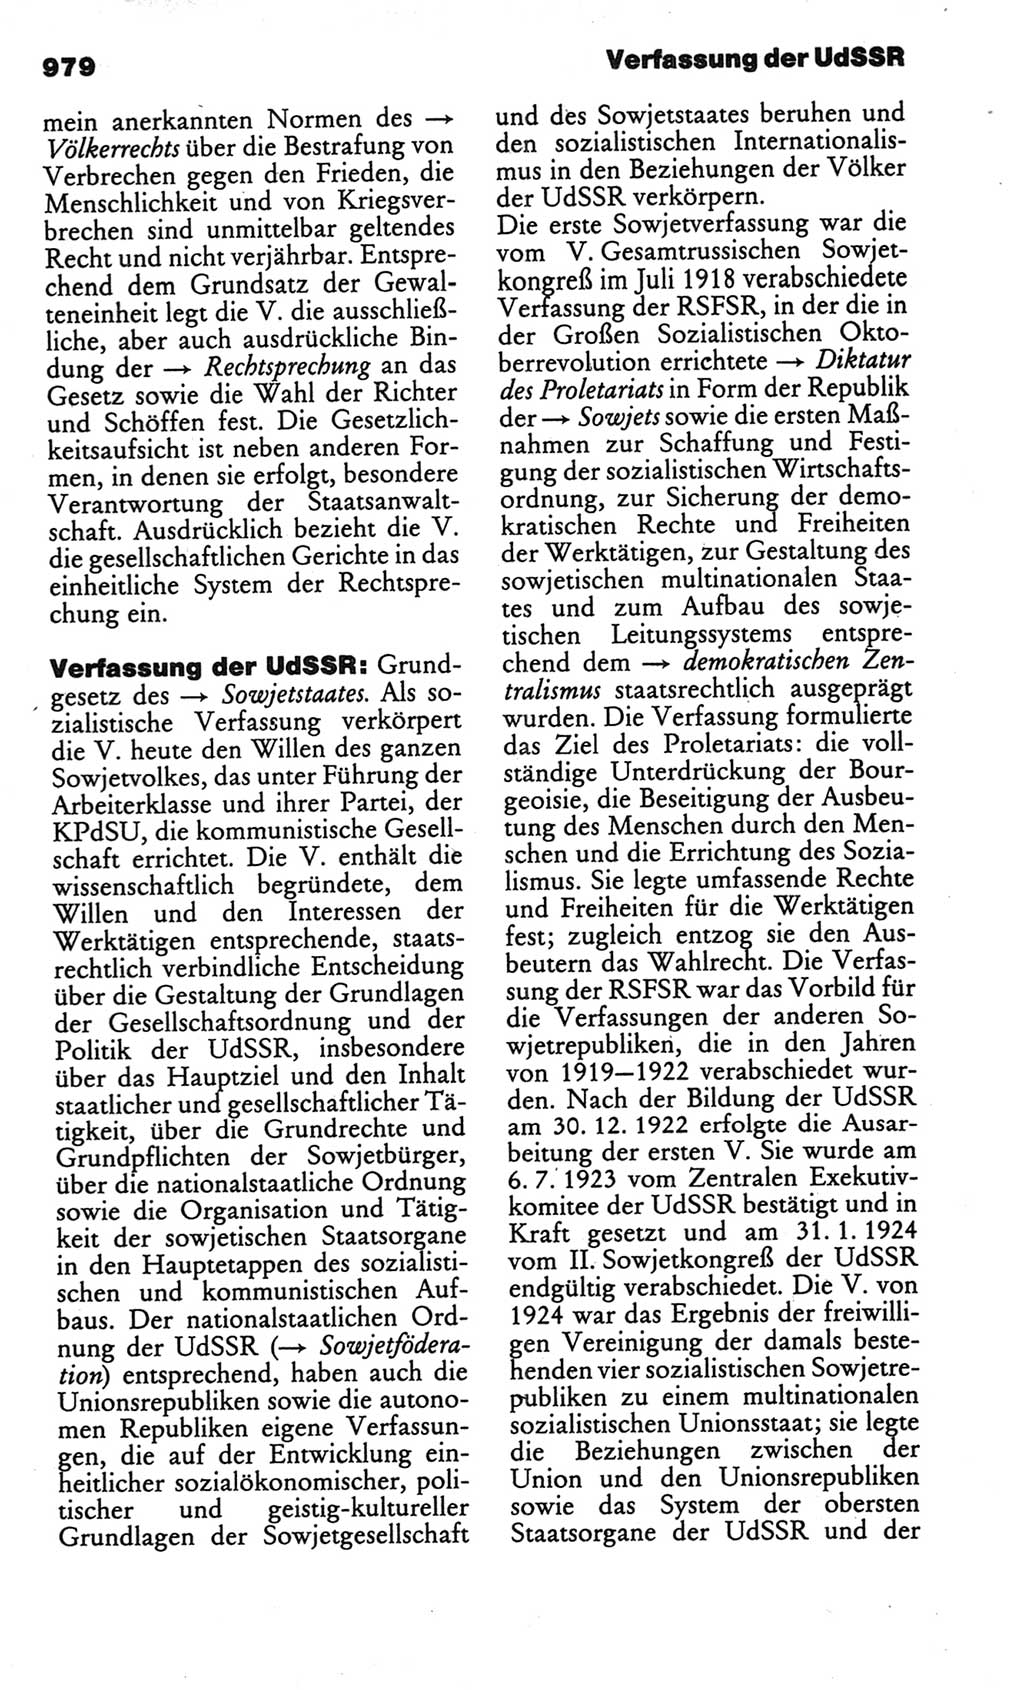 Kleines politisches Wörterbuch [Deutsche Demokratische Republik (DDR)] 1986, Seite 979 (Kl. pol. Wb. DDR 1986, S. 979)